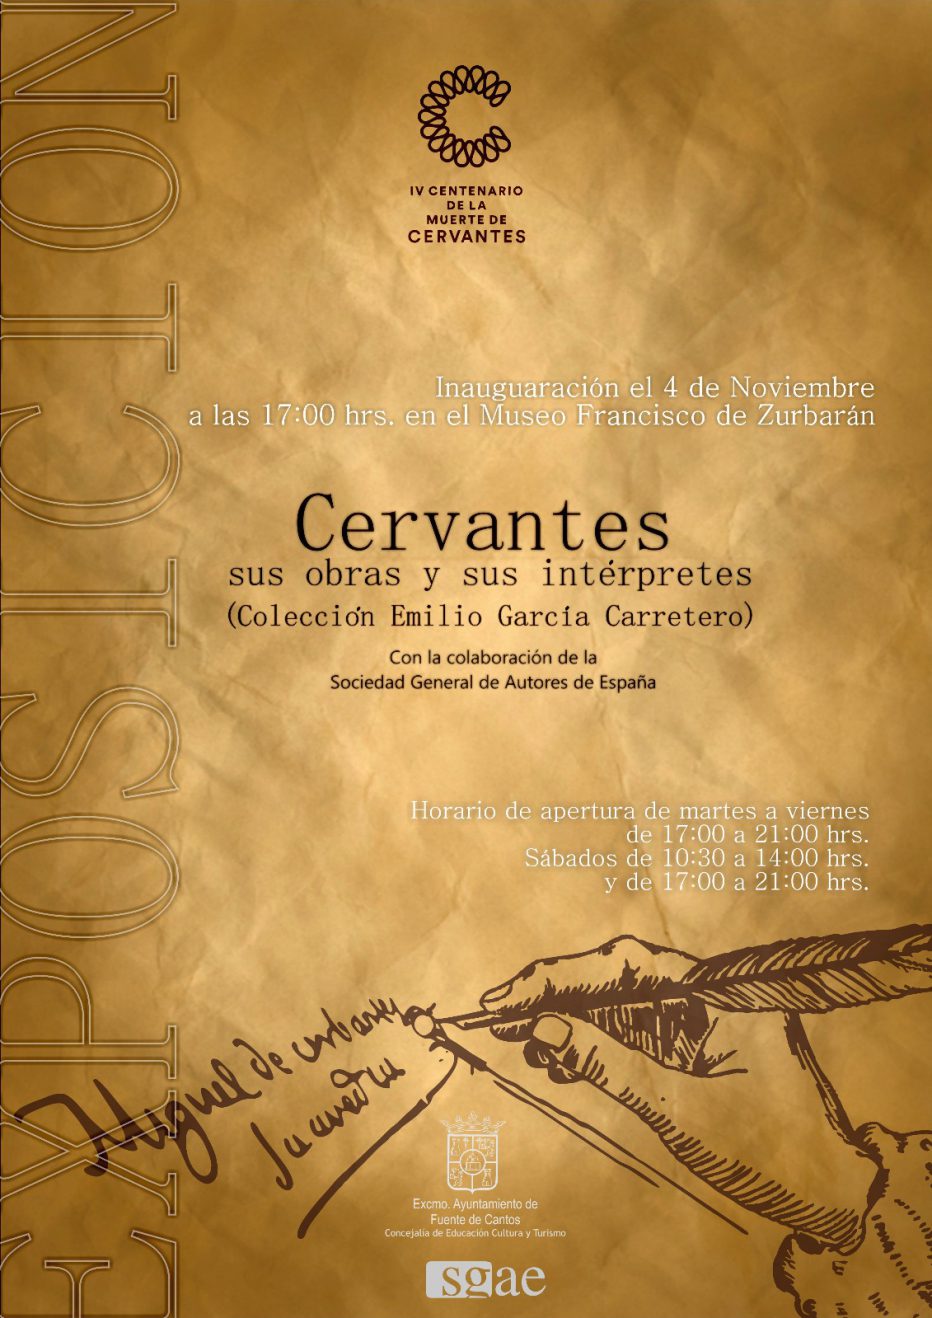 4 NOVIEMBRE Inauguración de la Exposición Cervantes sus Obras y sus Intérpretes